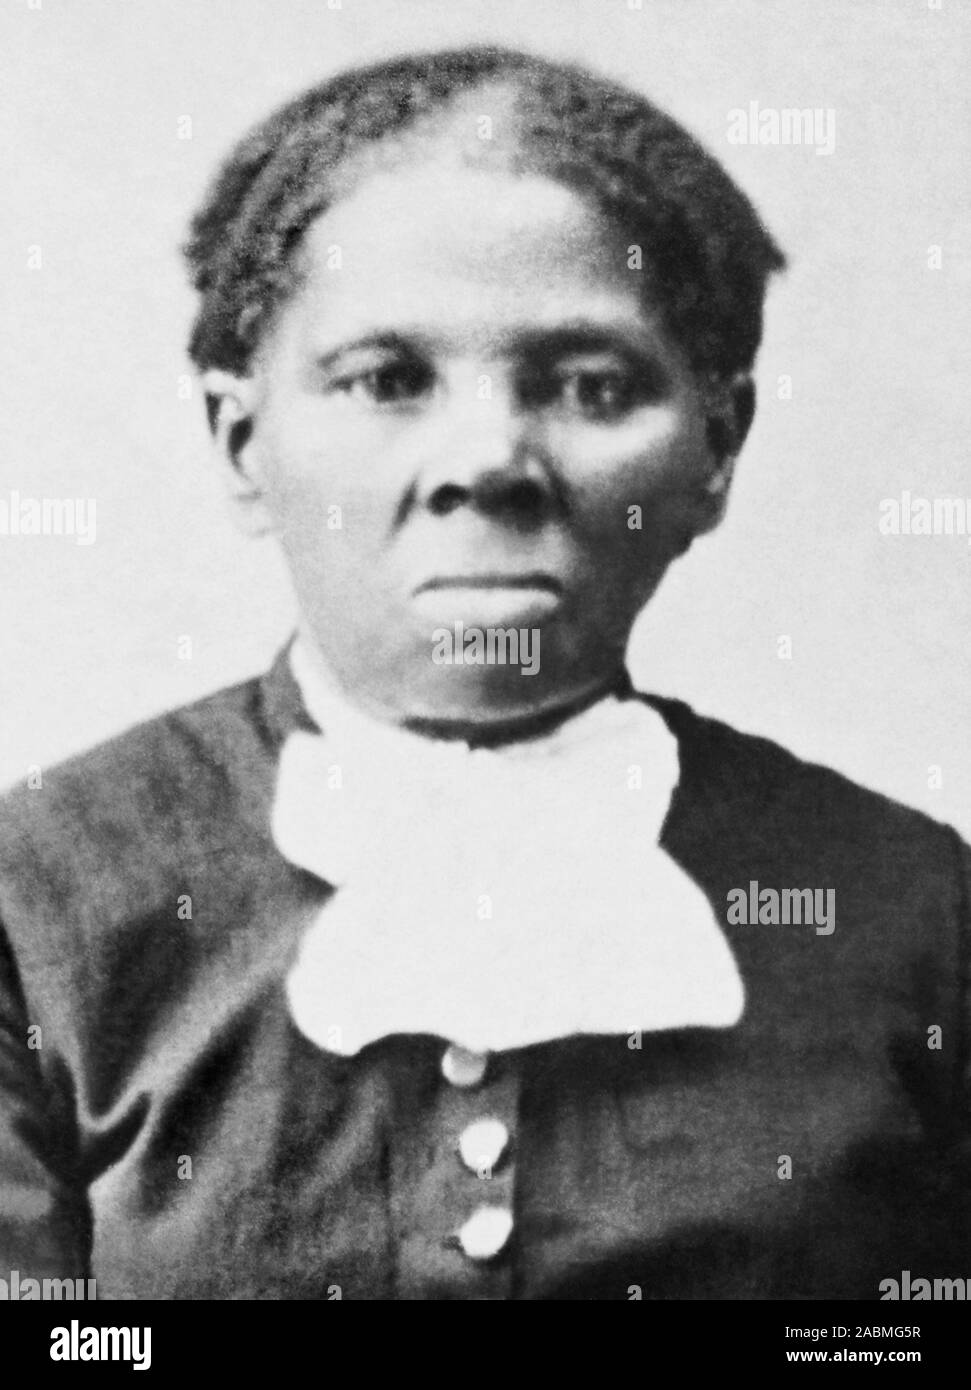 Vintage foto ritratto di Harriet Tubman (c1820 - 1913). Nato in schiavitù, Tubman (nome di nascita Araminta Ross) sono fuggiti e successivamente guidato altri schiavi della libertà via ferrovia sotterranea prima di lavorare come infermiera, spy e scout per la Union Army durante la Guerra Civile Americana. Nella vita successiva era impegnata nel lavoro umanitario e promosso la causa di il suffragio femminile. Foto circa 1875 da Harvey B Lindsley. Foto Stock